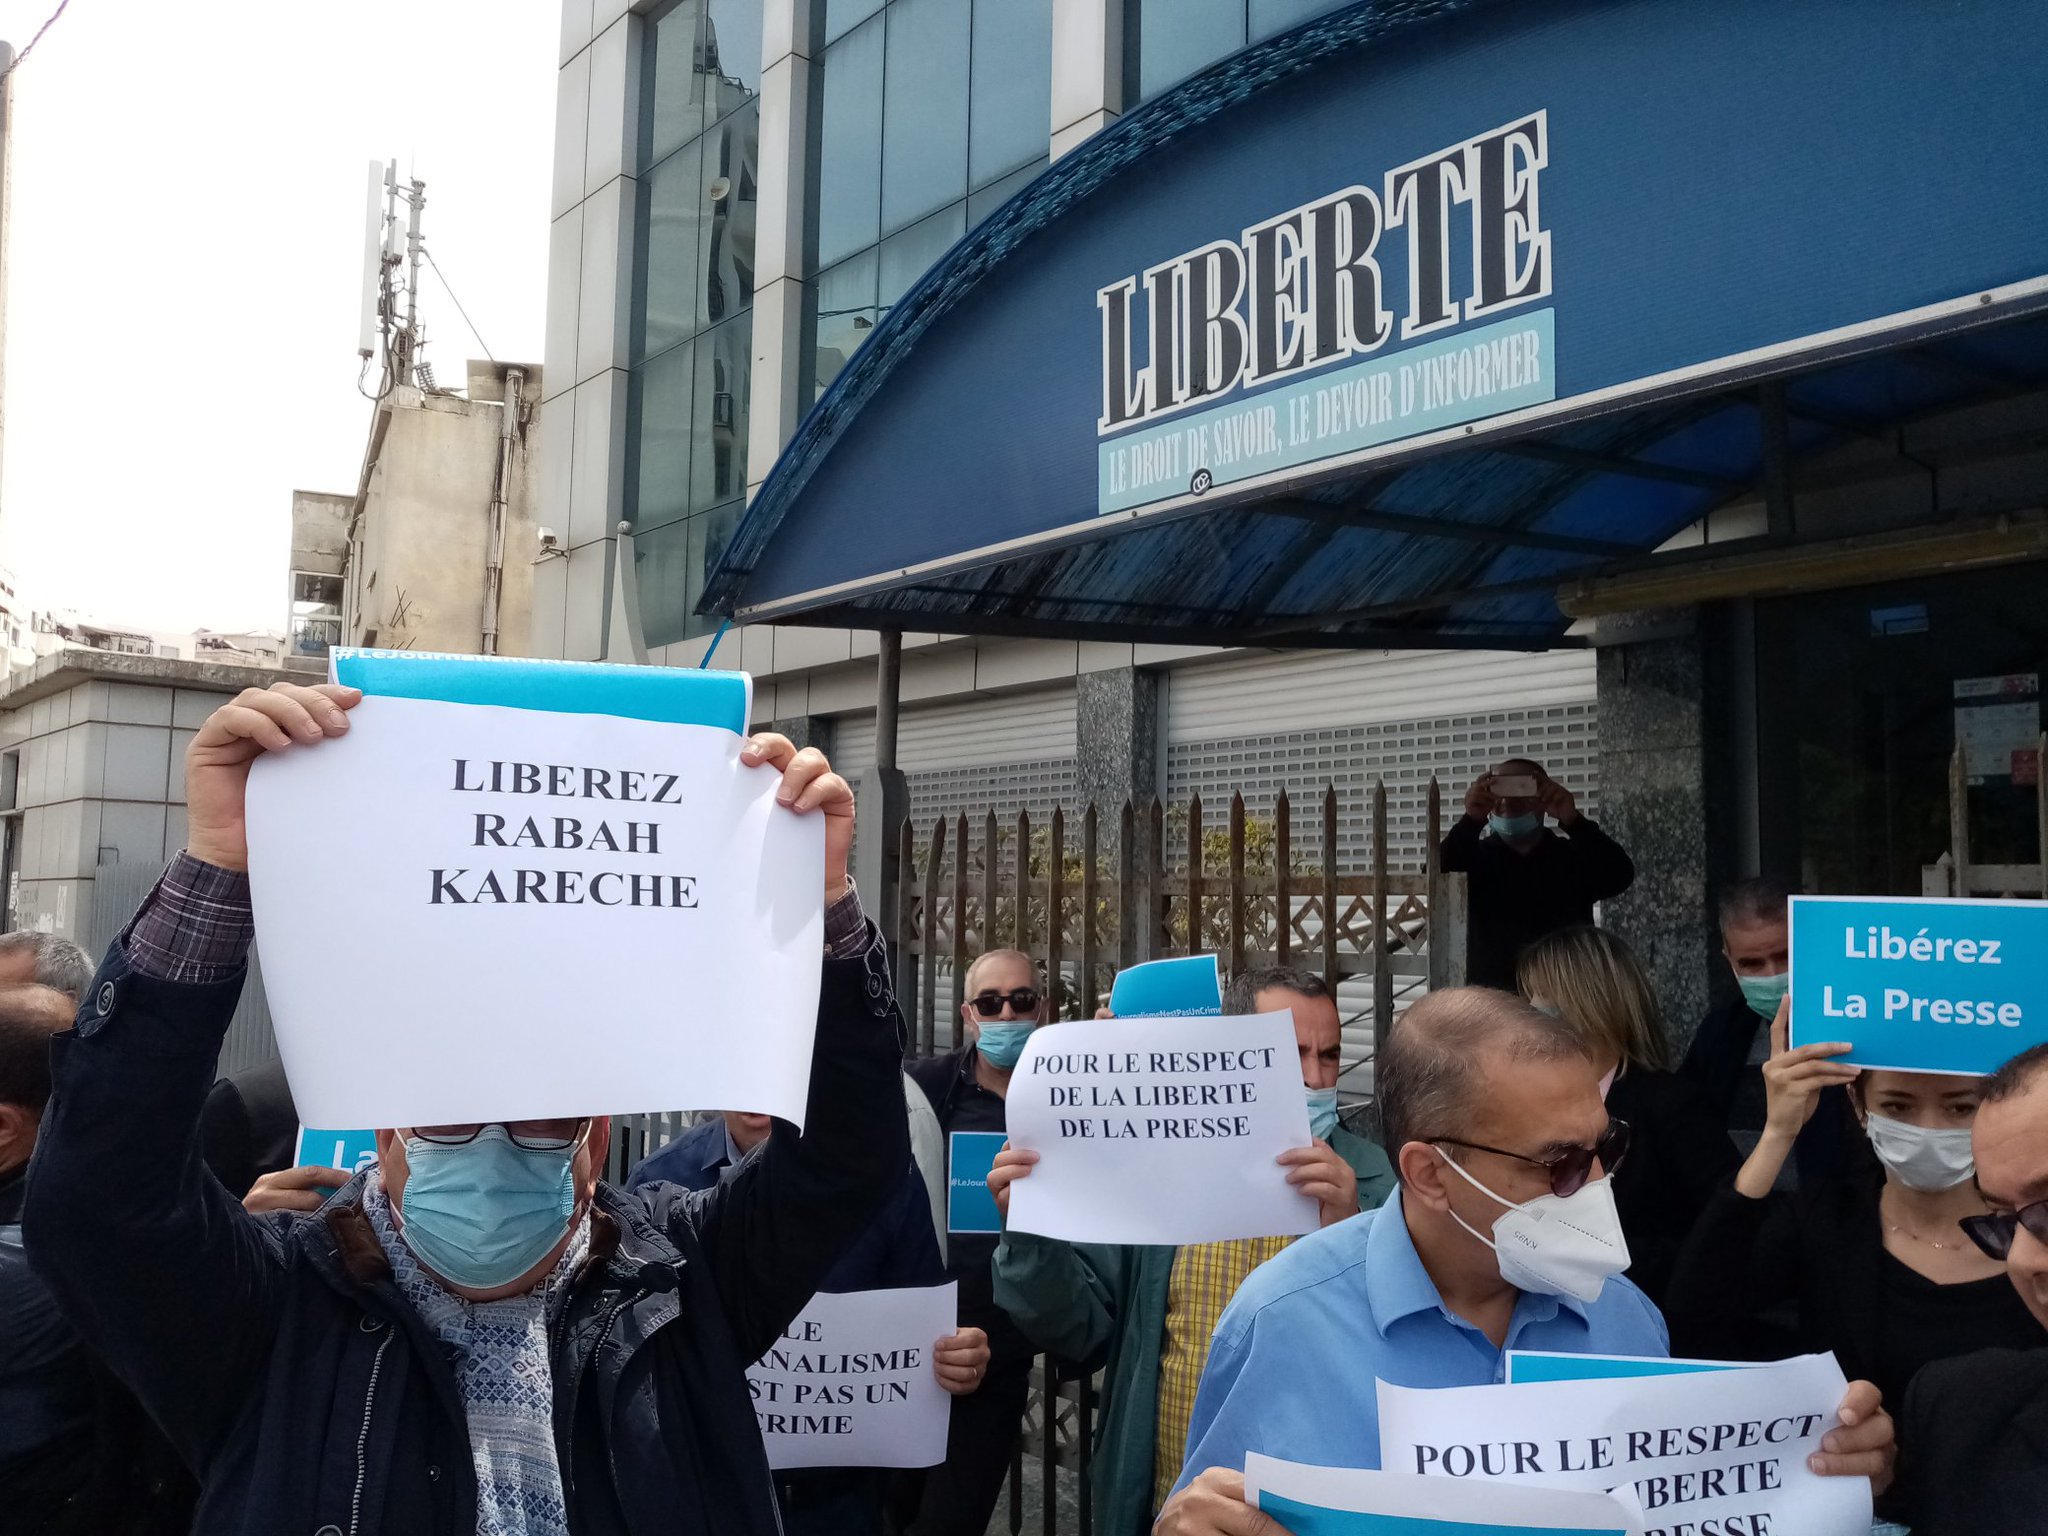 اليوم العالمي لحرية الصحافة: صحفيون ومحامون يتجنّدون للمطالبة بالإفراج عن الصحفي رابح كارش